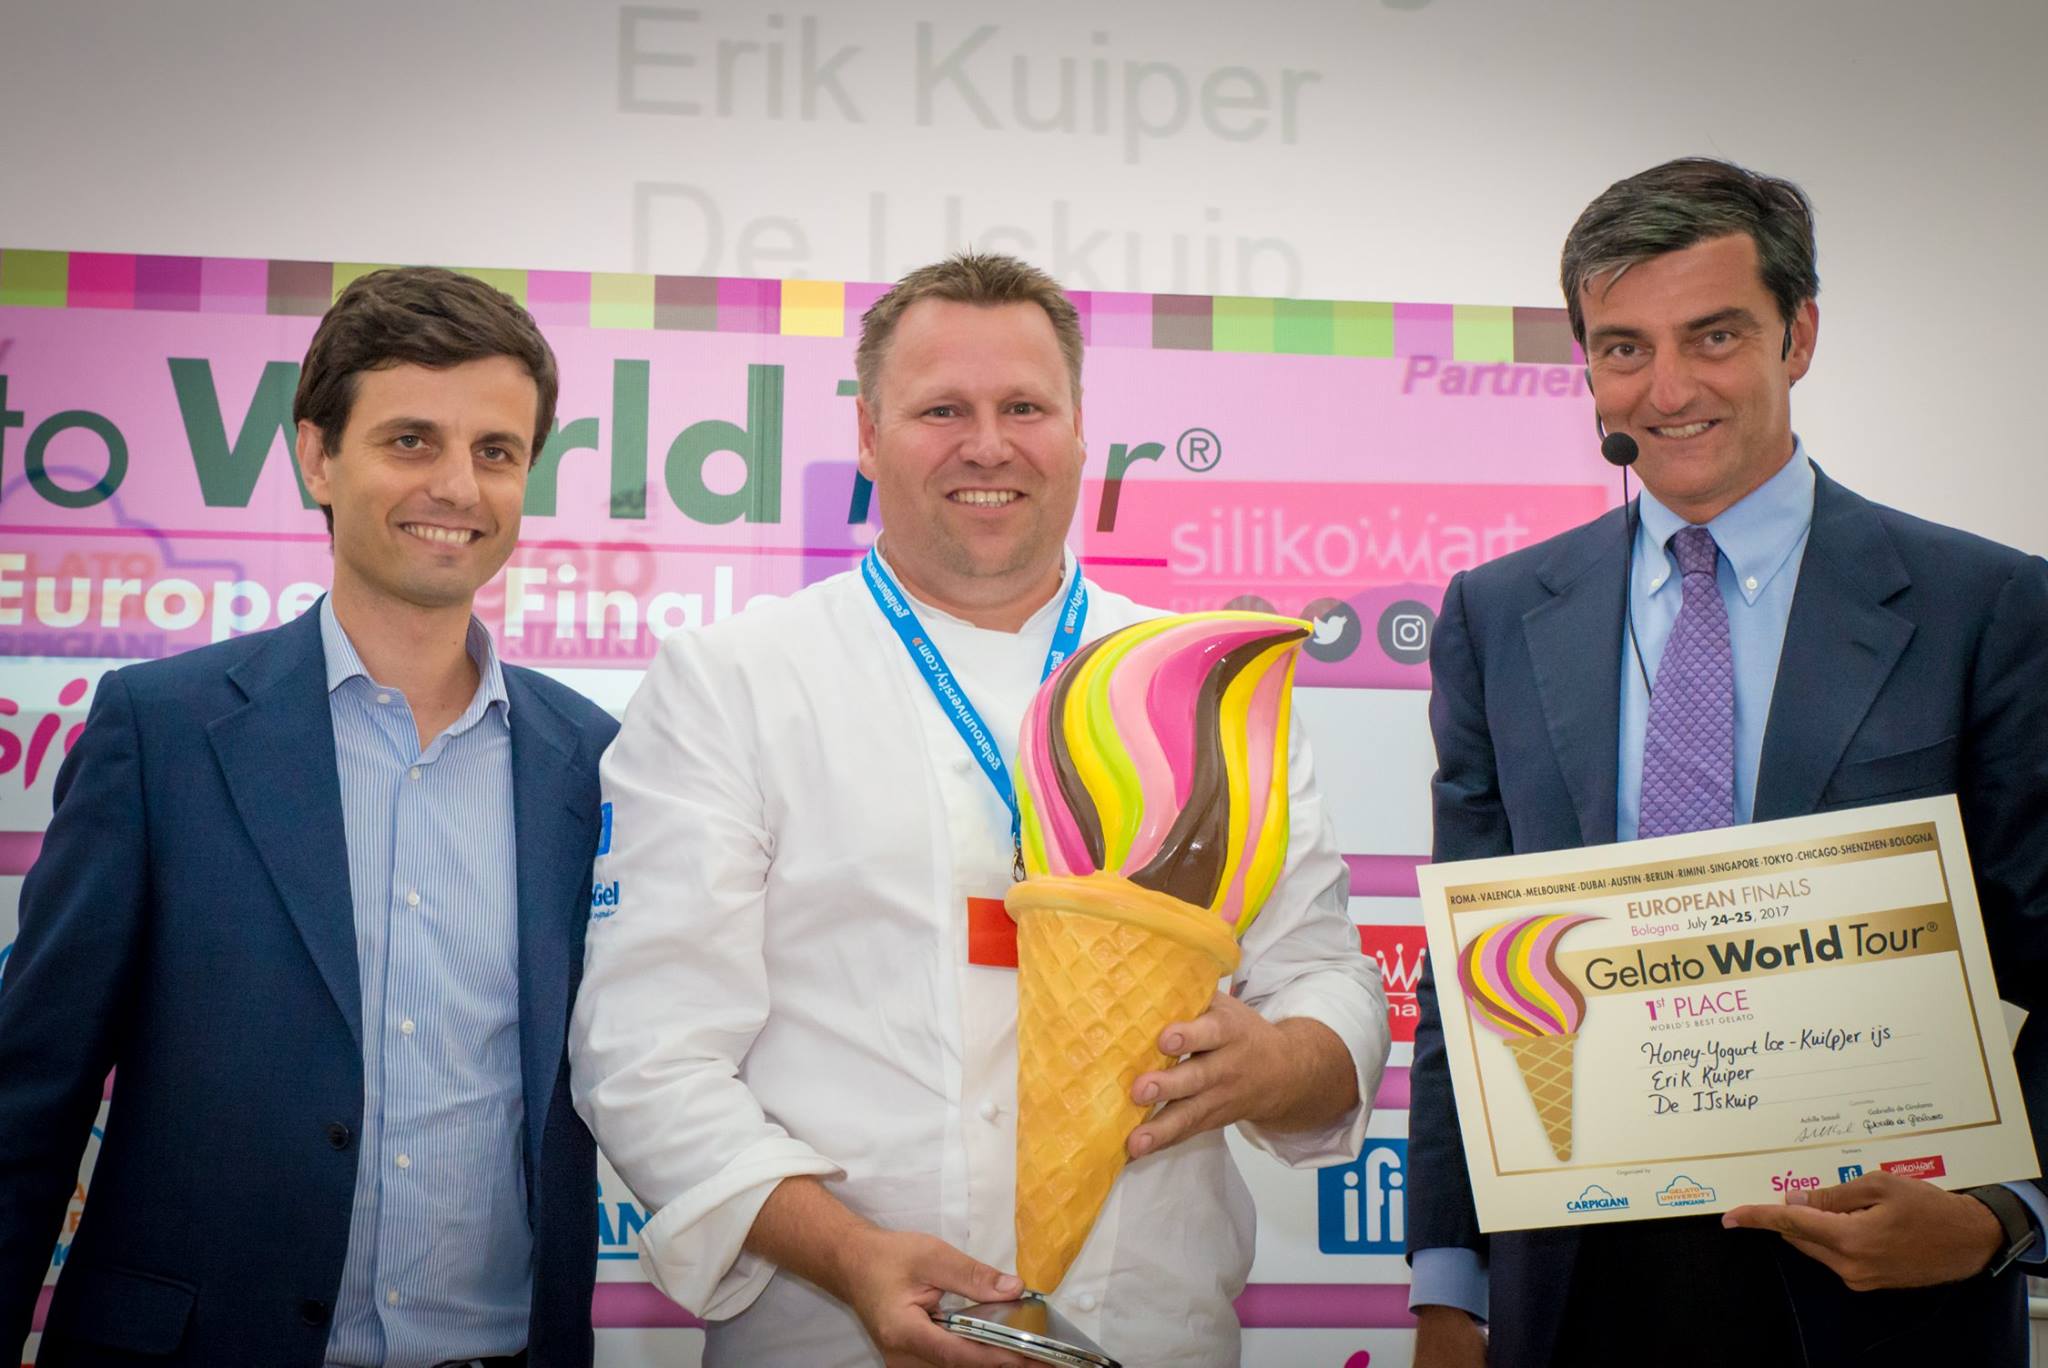 Erik Kuiper gelato world tour eerste prijs